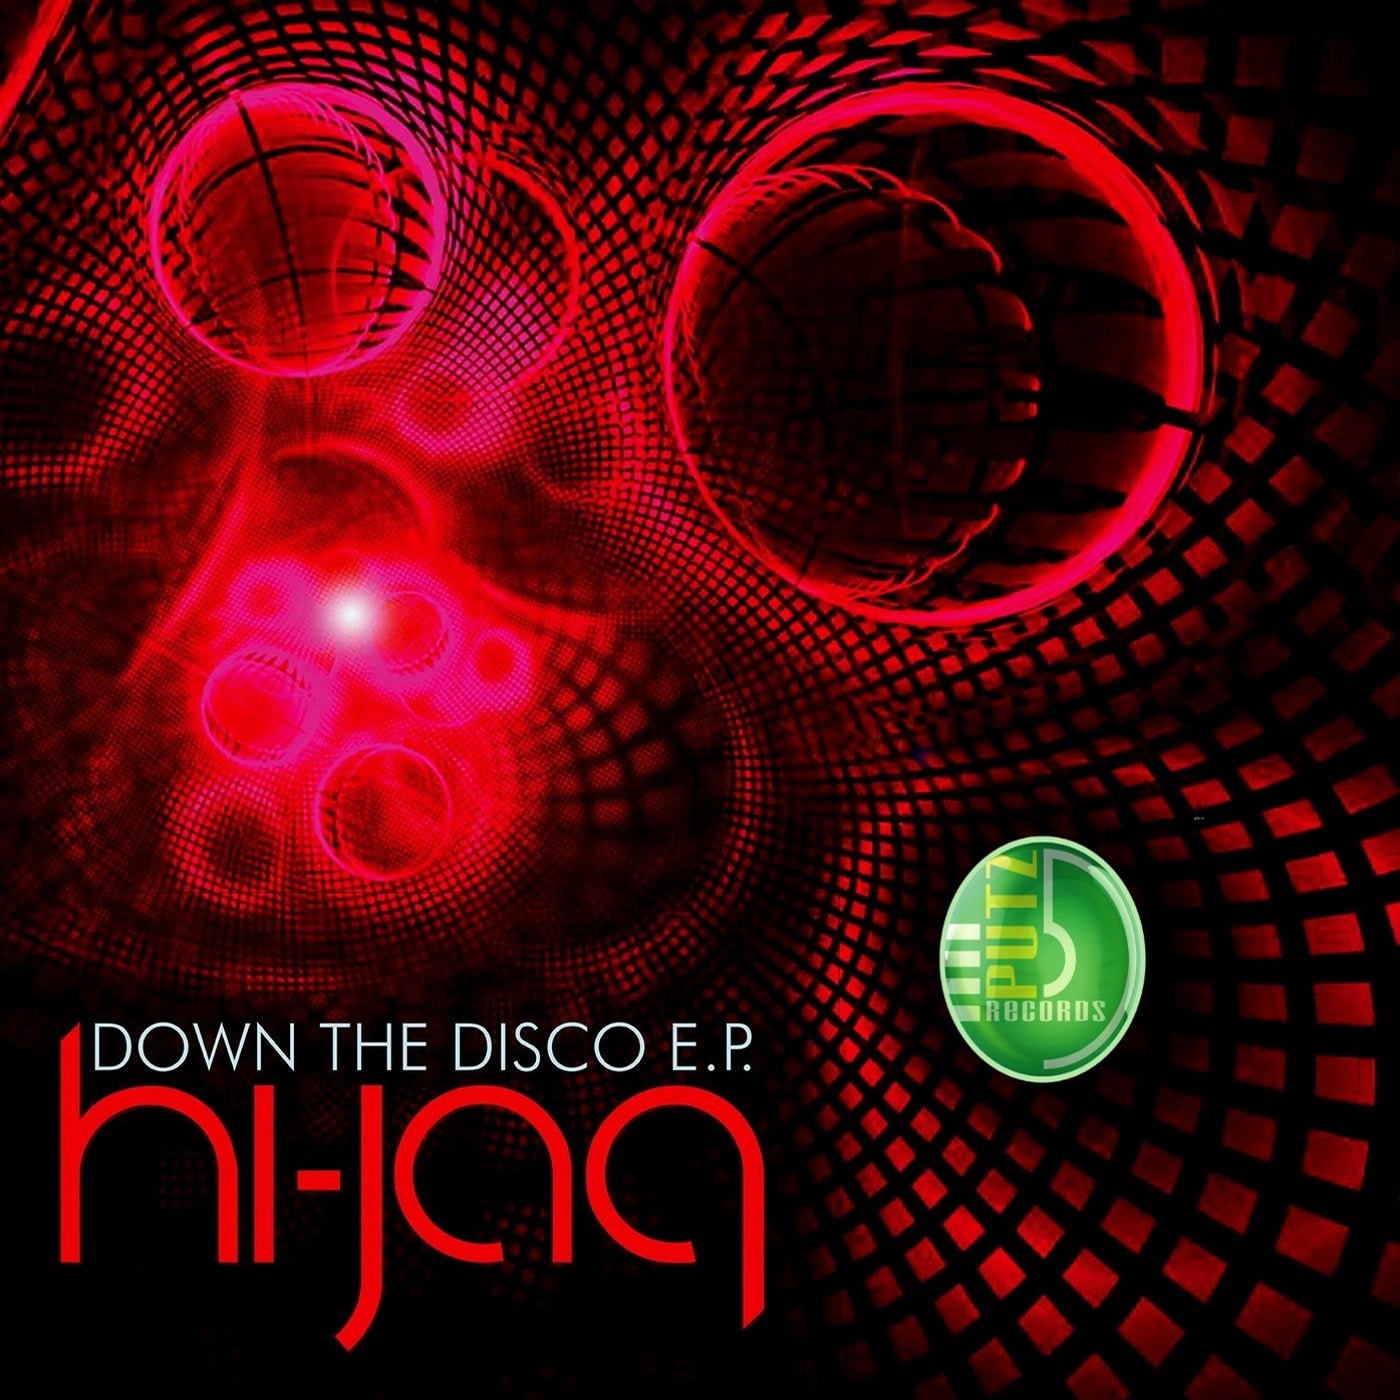 Down The Disco E.P